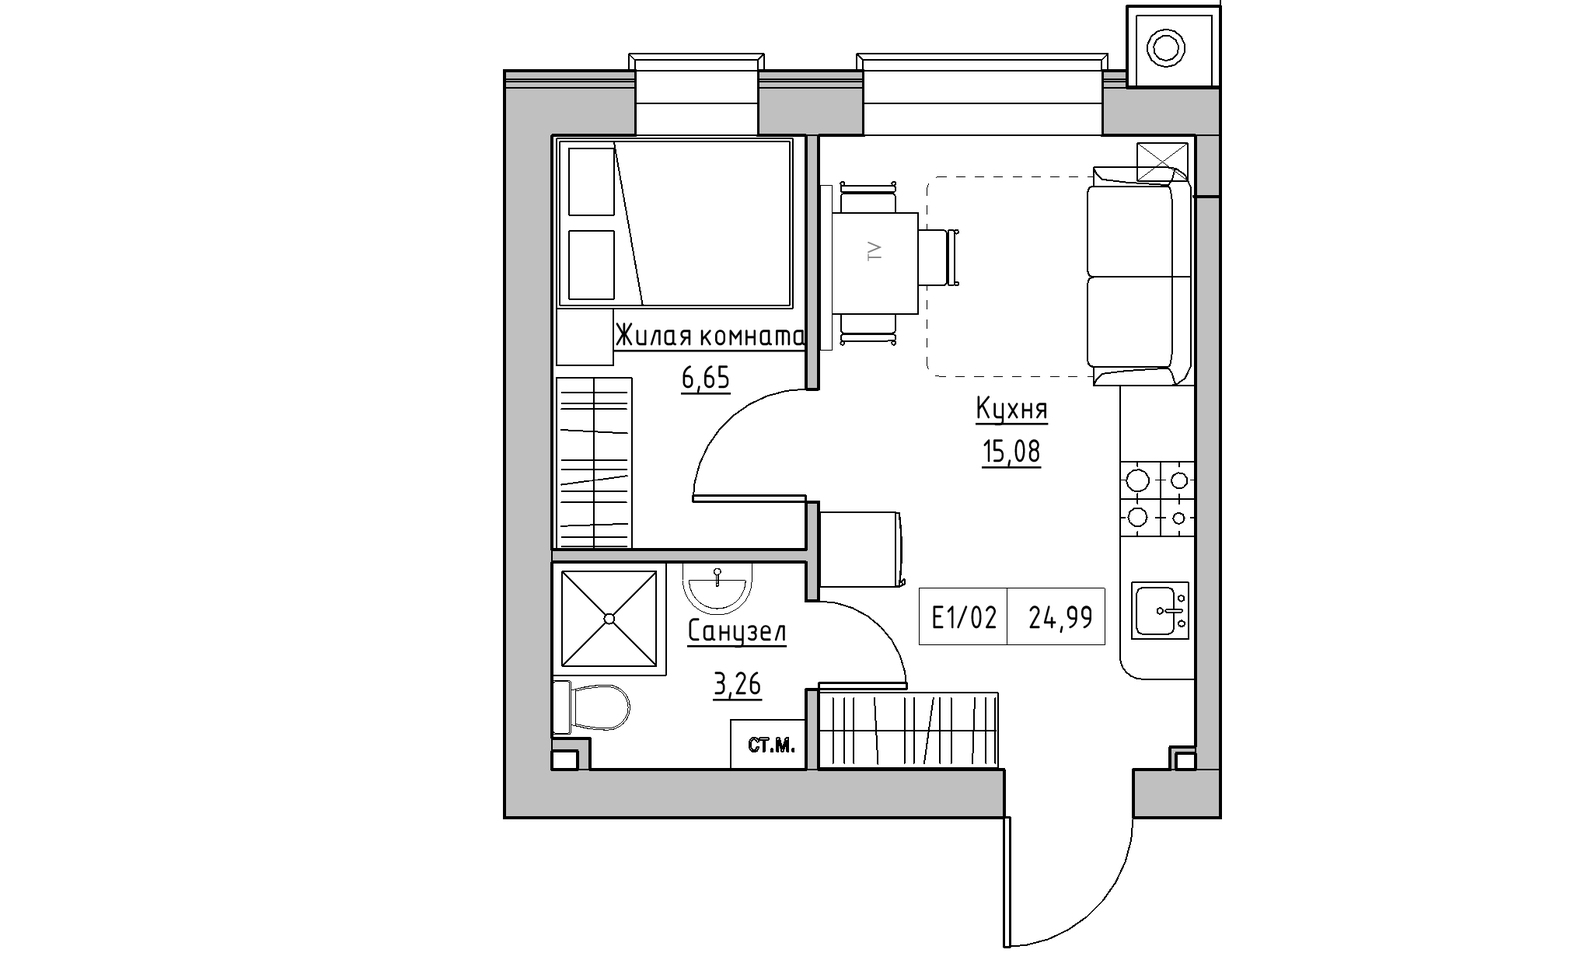 Планування 1-к квартира площею 24.99м2, KS-014-03/0004.